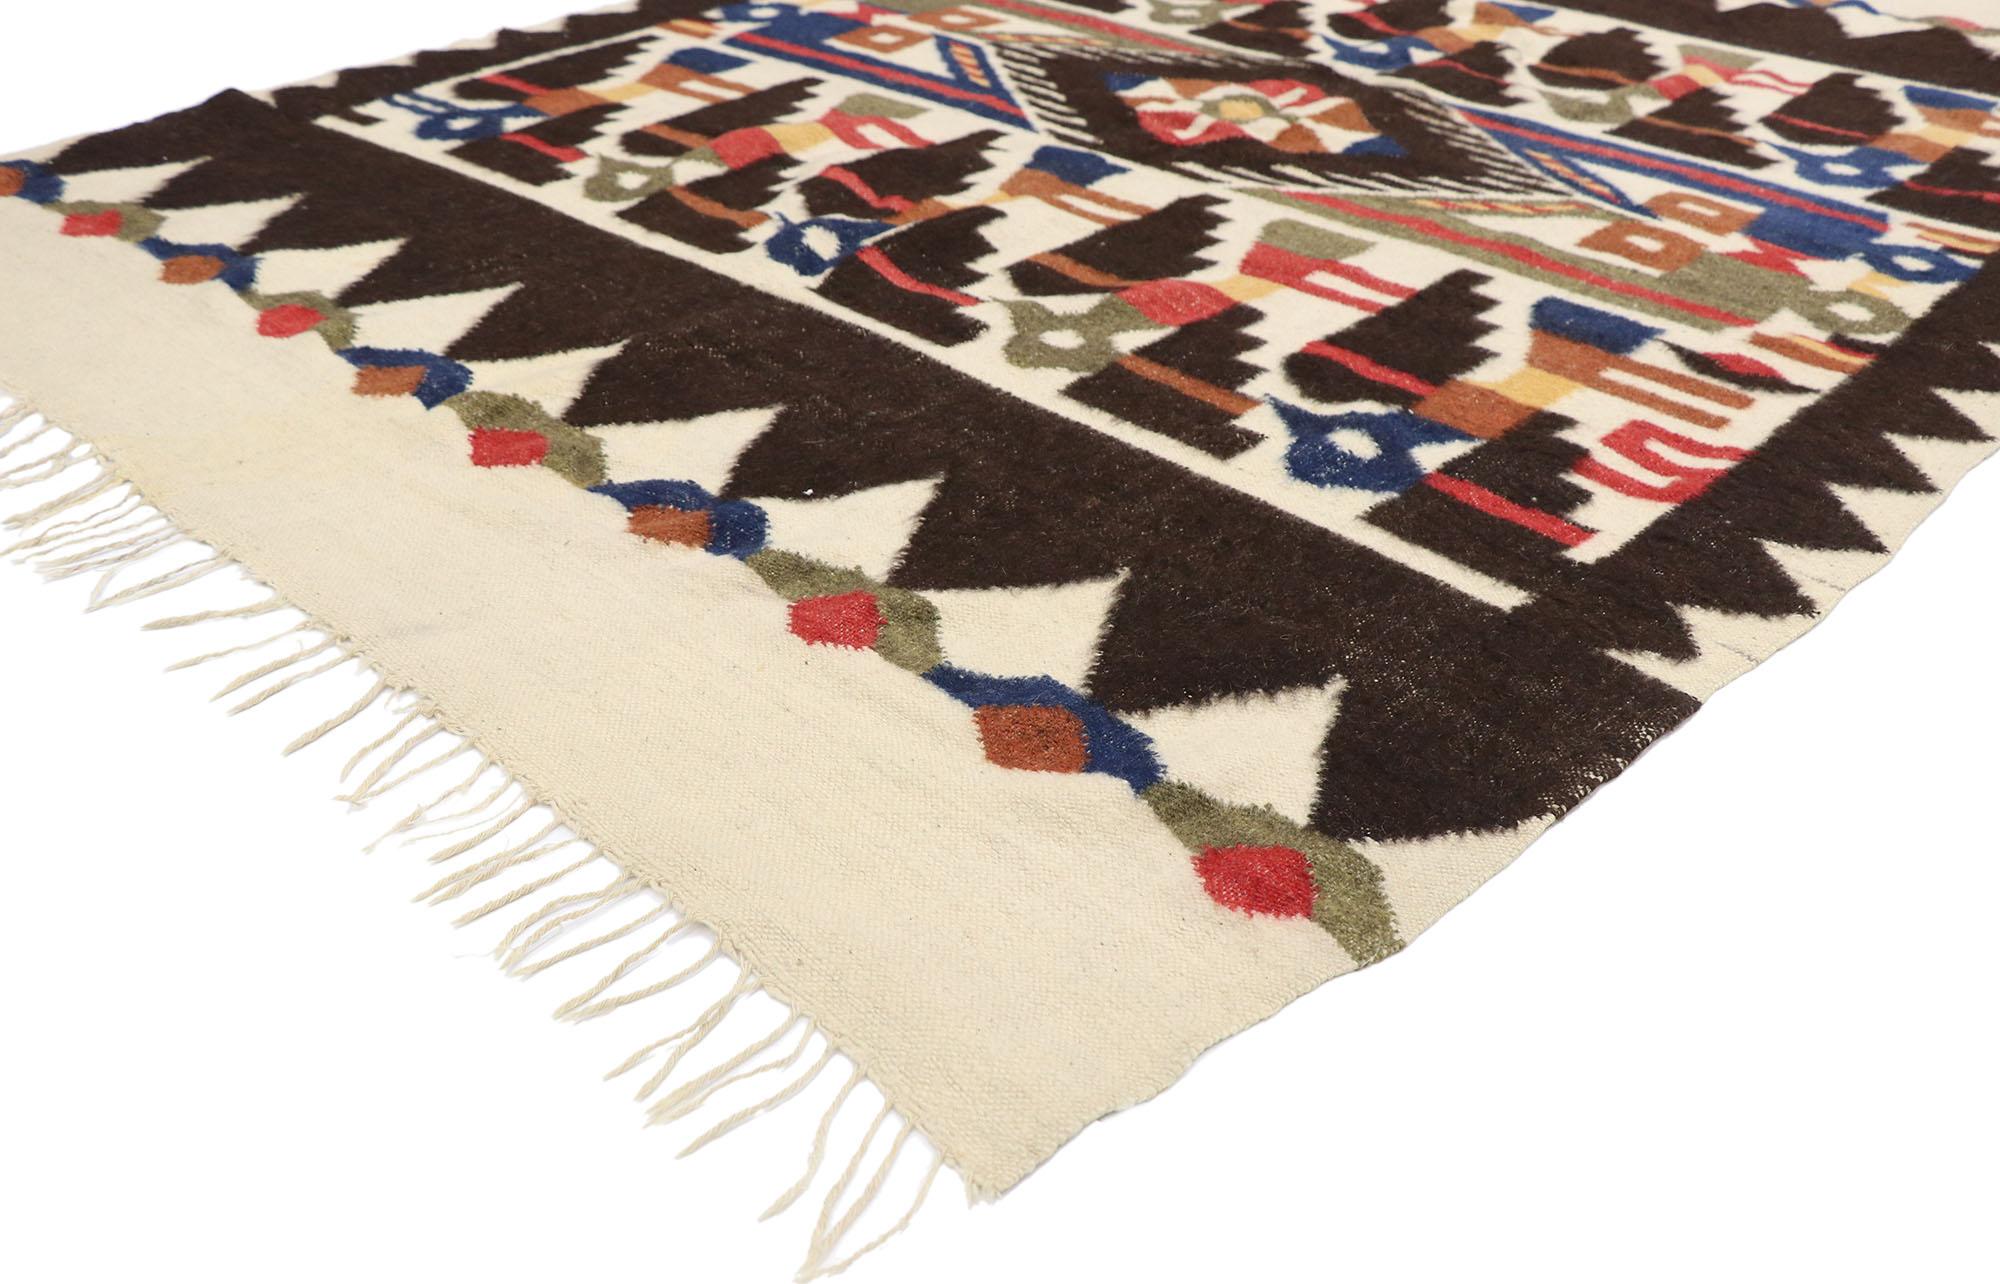 78077 tapis Kilim vintage d'Amérique du Sud de style Tribal 05'04 x 07'06. Emulant la culture pré-inca Chancay, ce tapis péruvien vintage kilim en laine d'Amérique du Sud tissé à la main est une vision captivante de la beauté tissée. L'étonnant